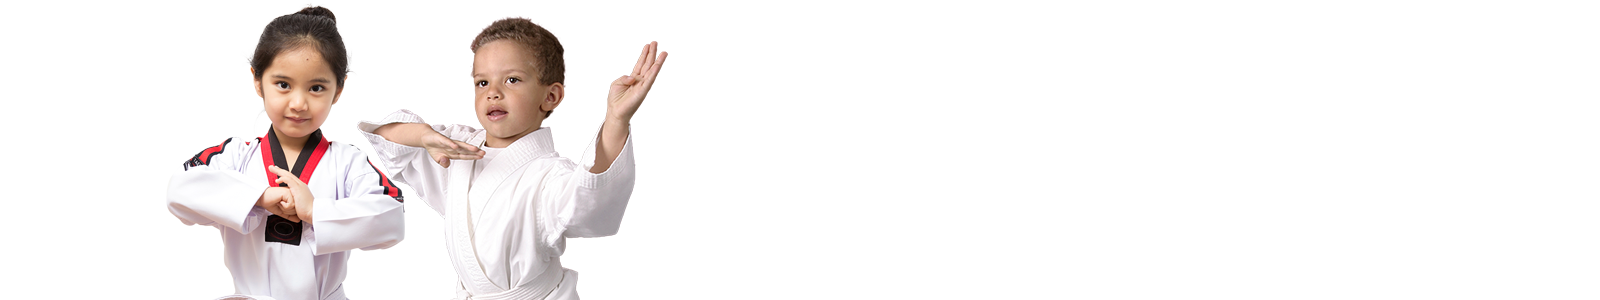 slider-martial-arts-tiny-tiger